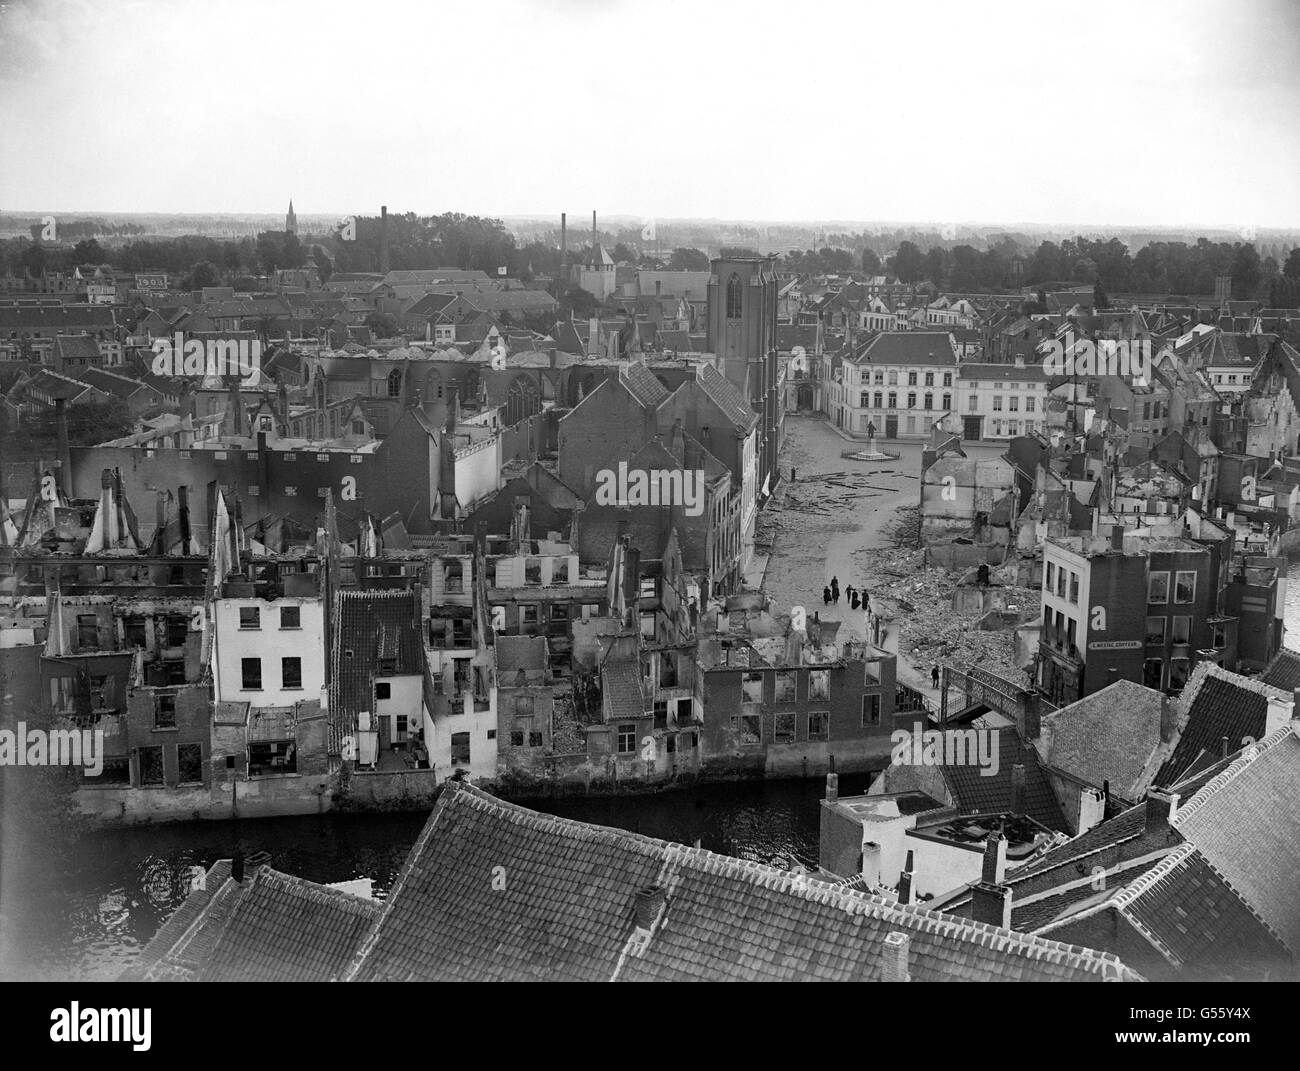 Una visione generale di una devastata Termonde, Belgio. Al momento in cui questa foto è stata scattata, gli avamposti tedeschi erano a meno di mezzo miglio dalla città rovinata, e il giorno seguente è stato occupato dai tedeschi. Foto Stock